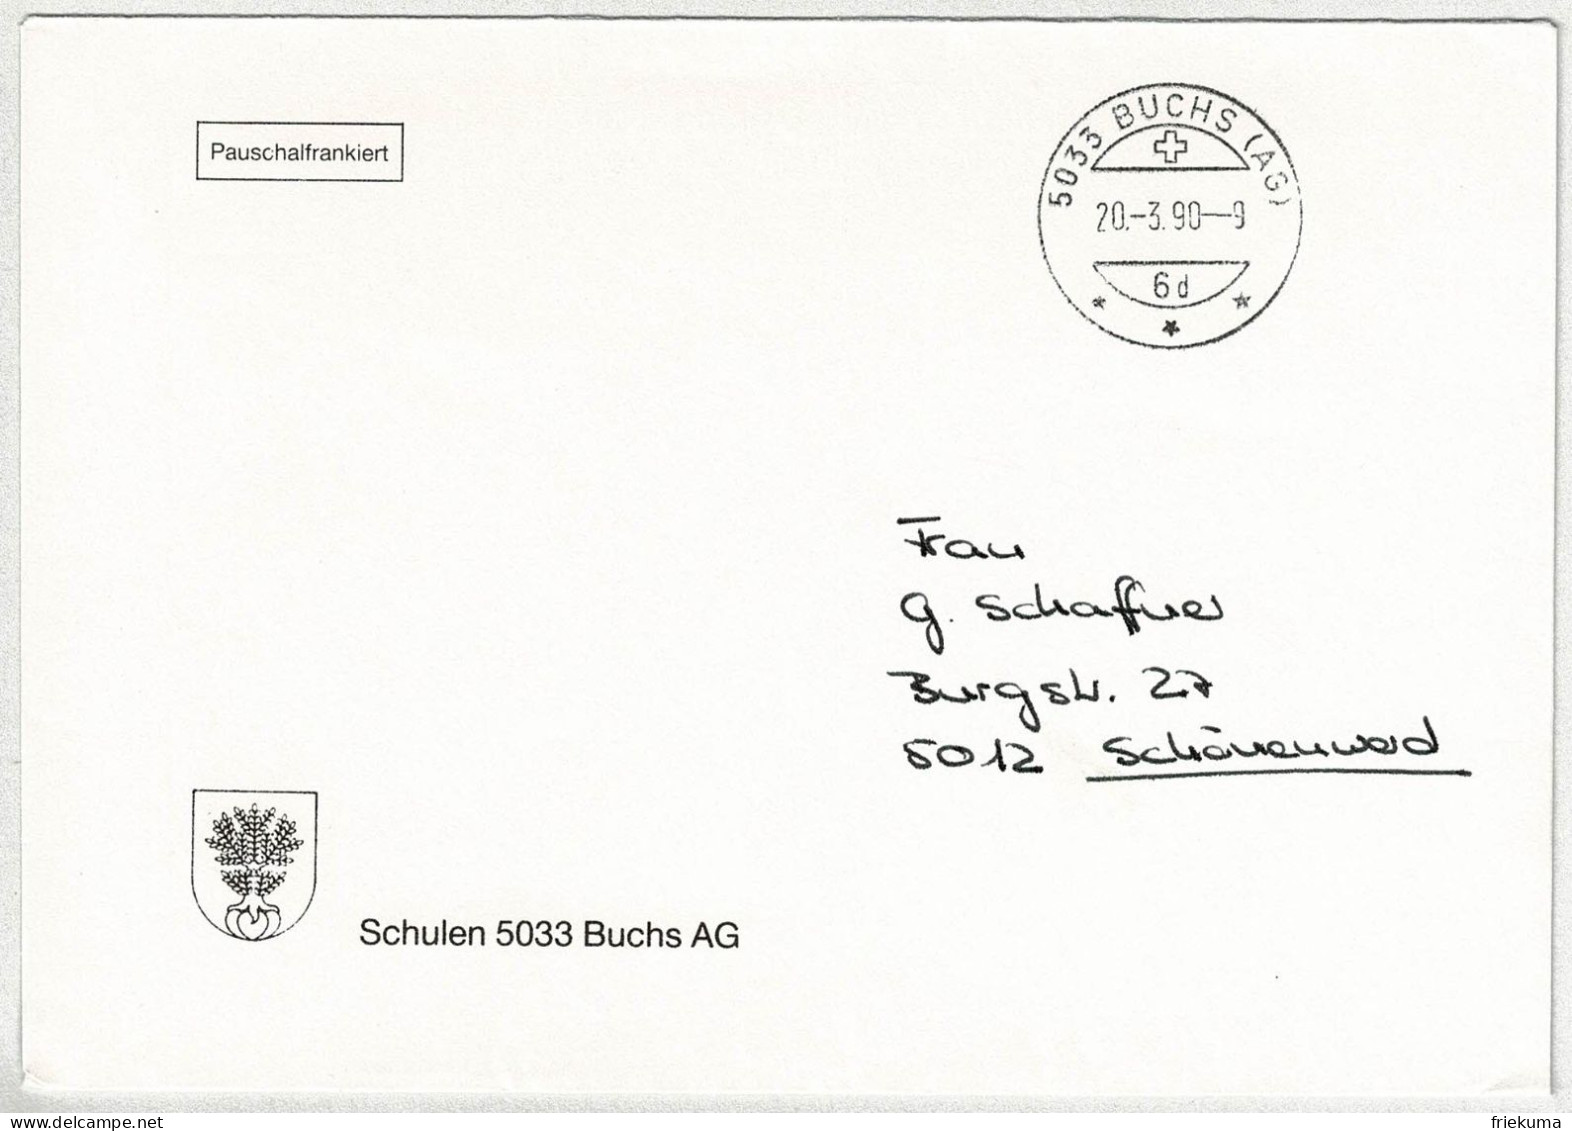 Schweiz 1990, Brief Pauschalfrankiert Buchs - Schönenwerd - Poststempel